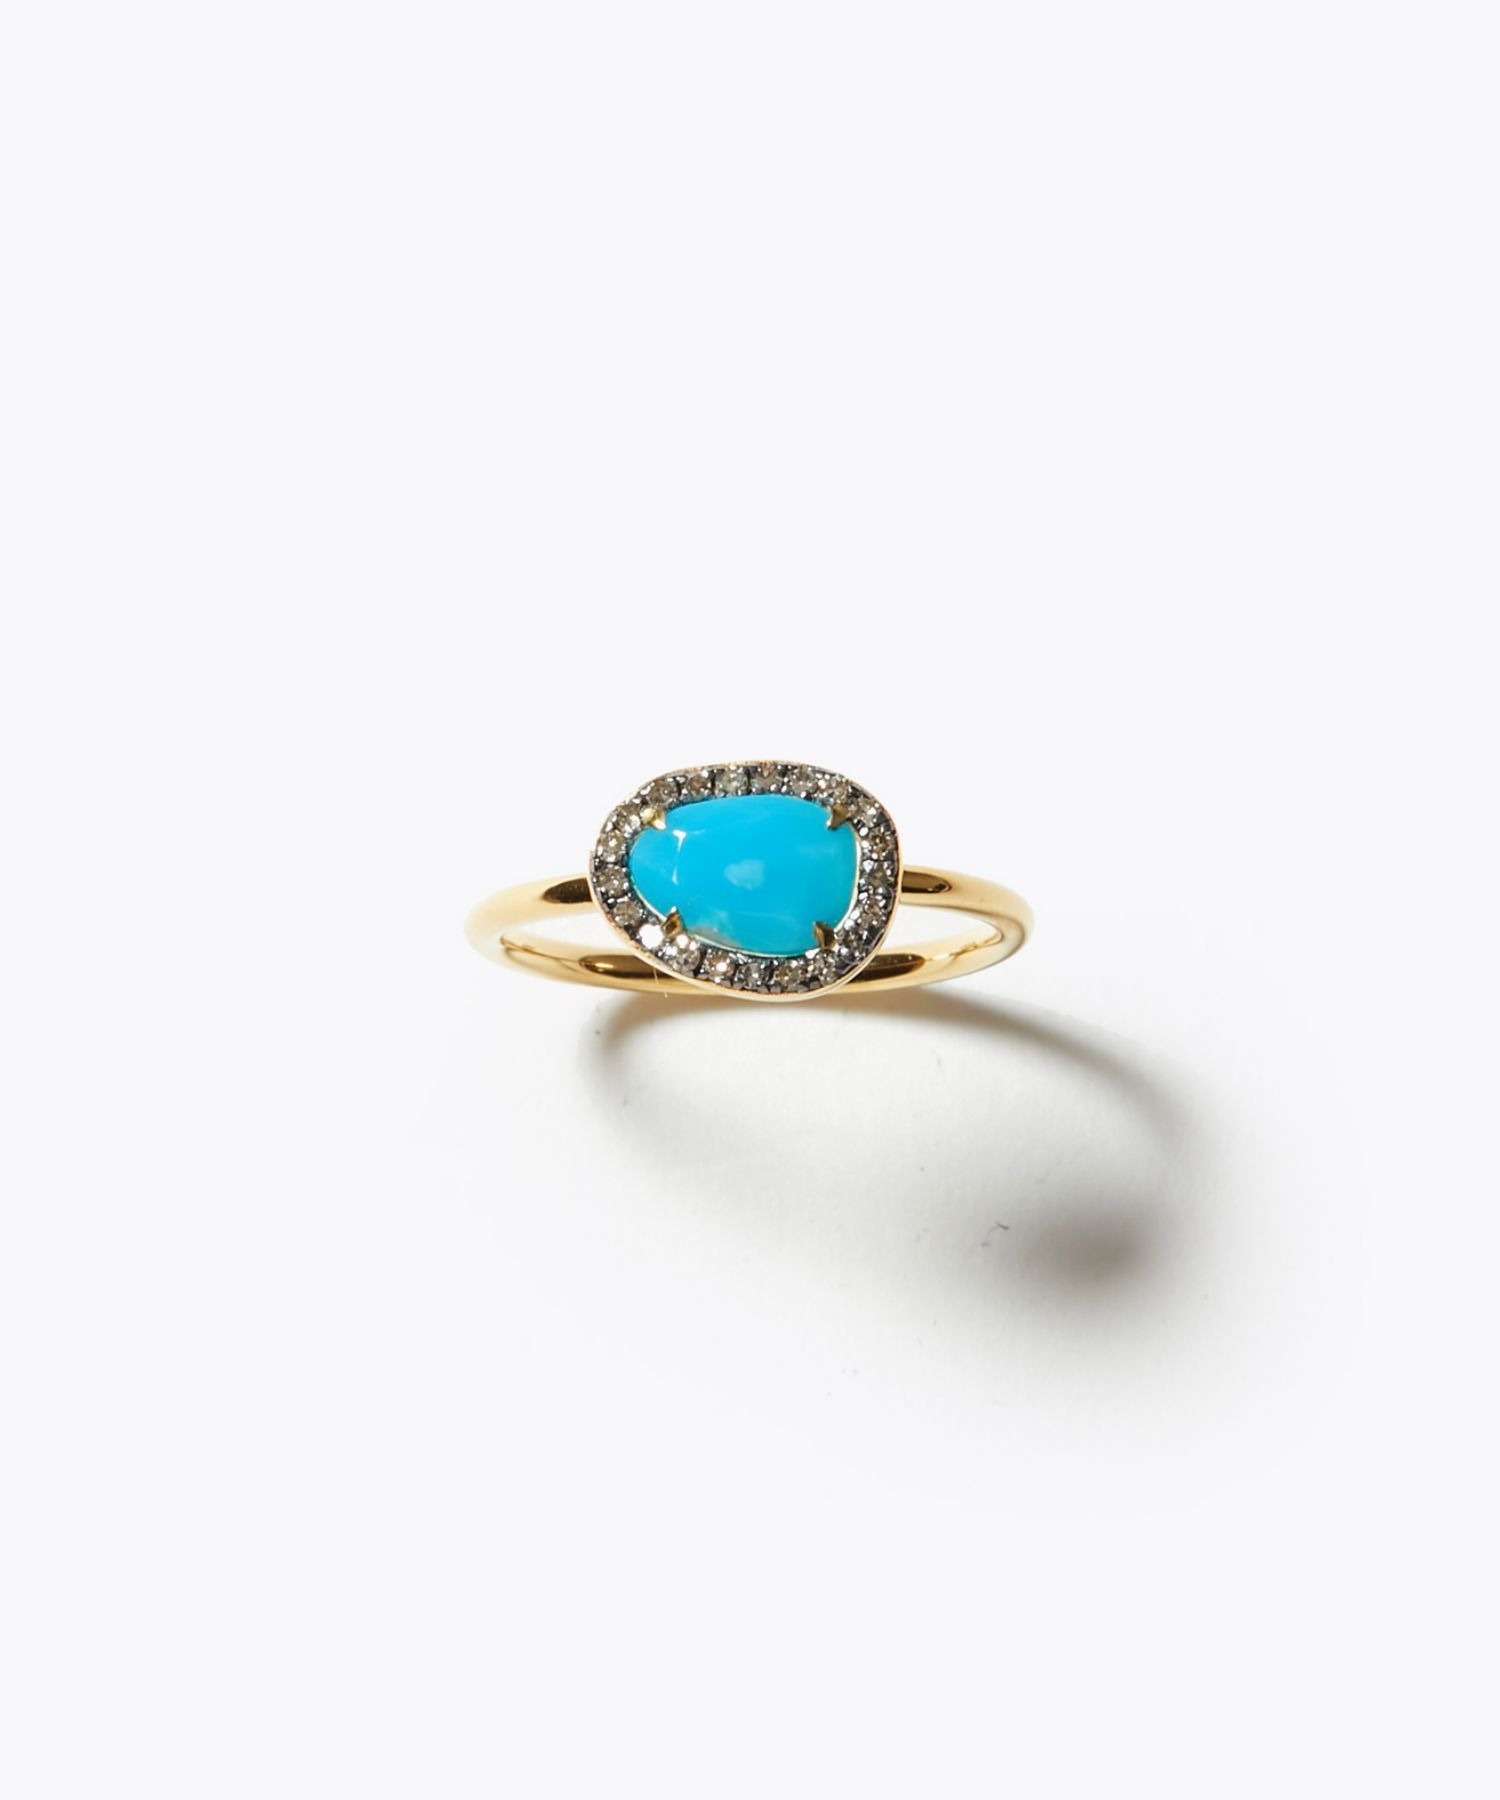 [elafonisi] turquoise pave diamonds ring